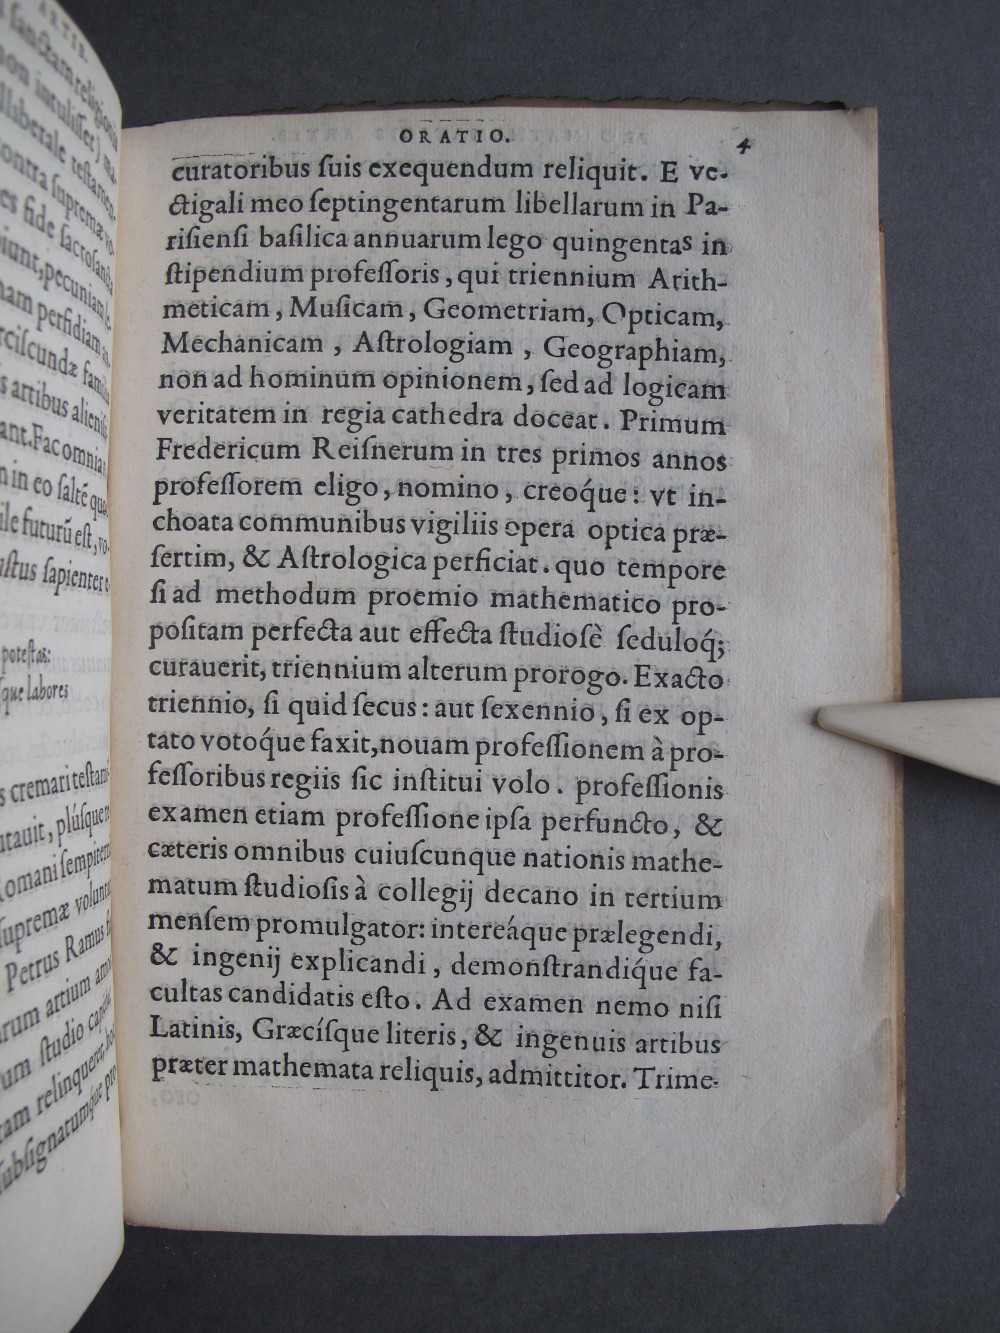 Folio 4 recto